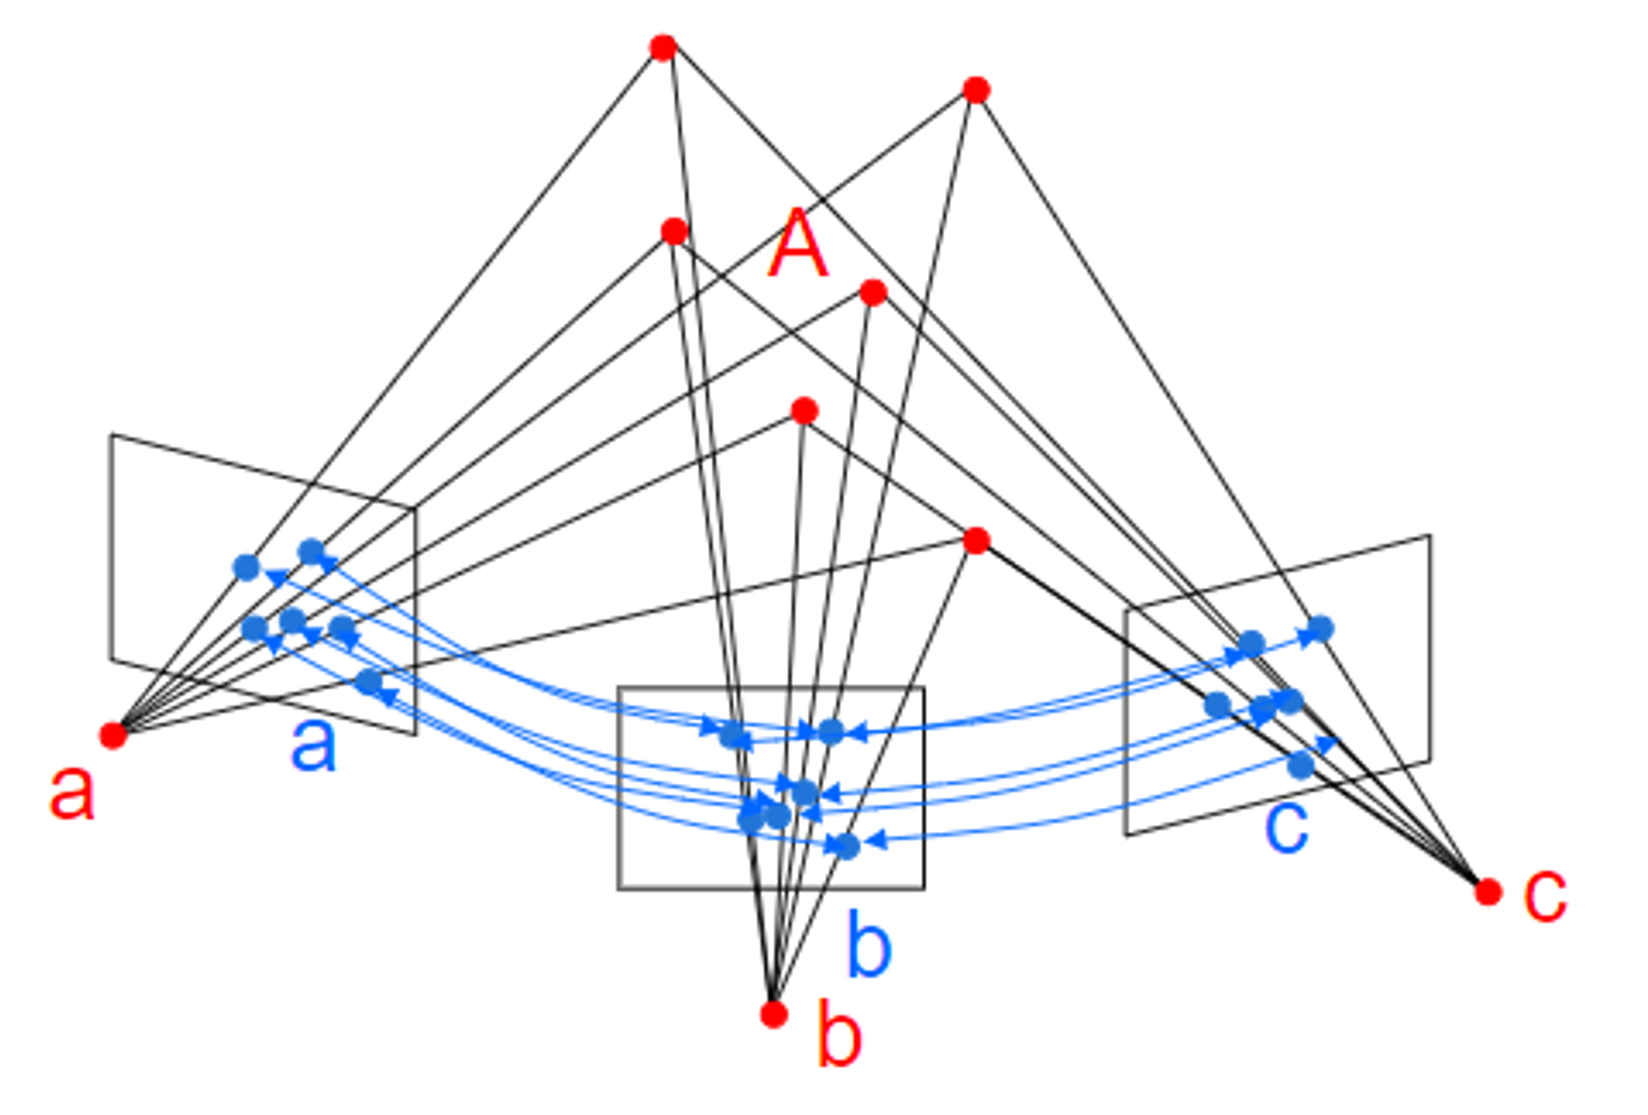 (멀티플 뷰 지오메트리) Lecture 8. Absolute Pose Estimation from Points or Lines